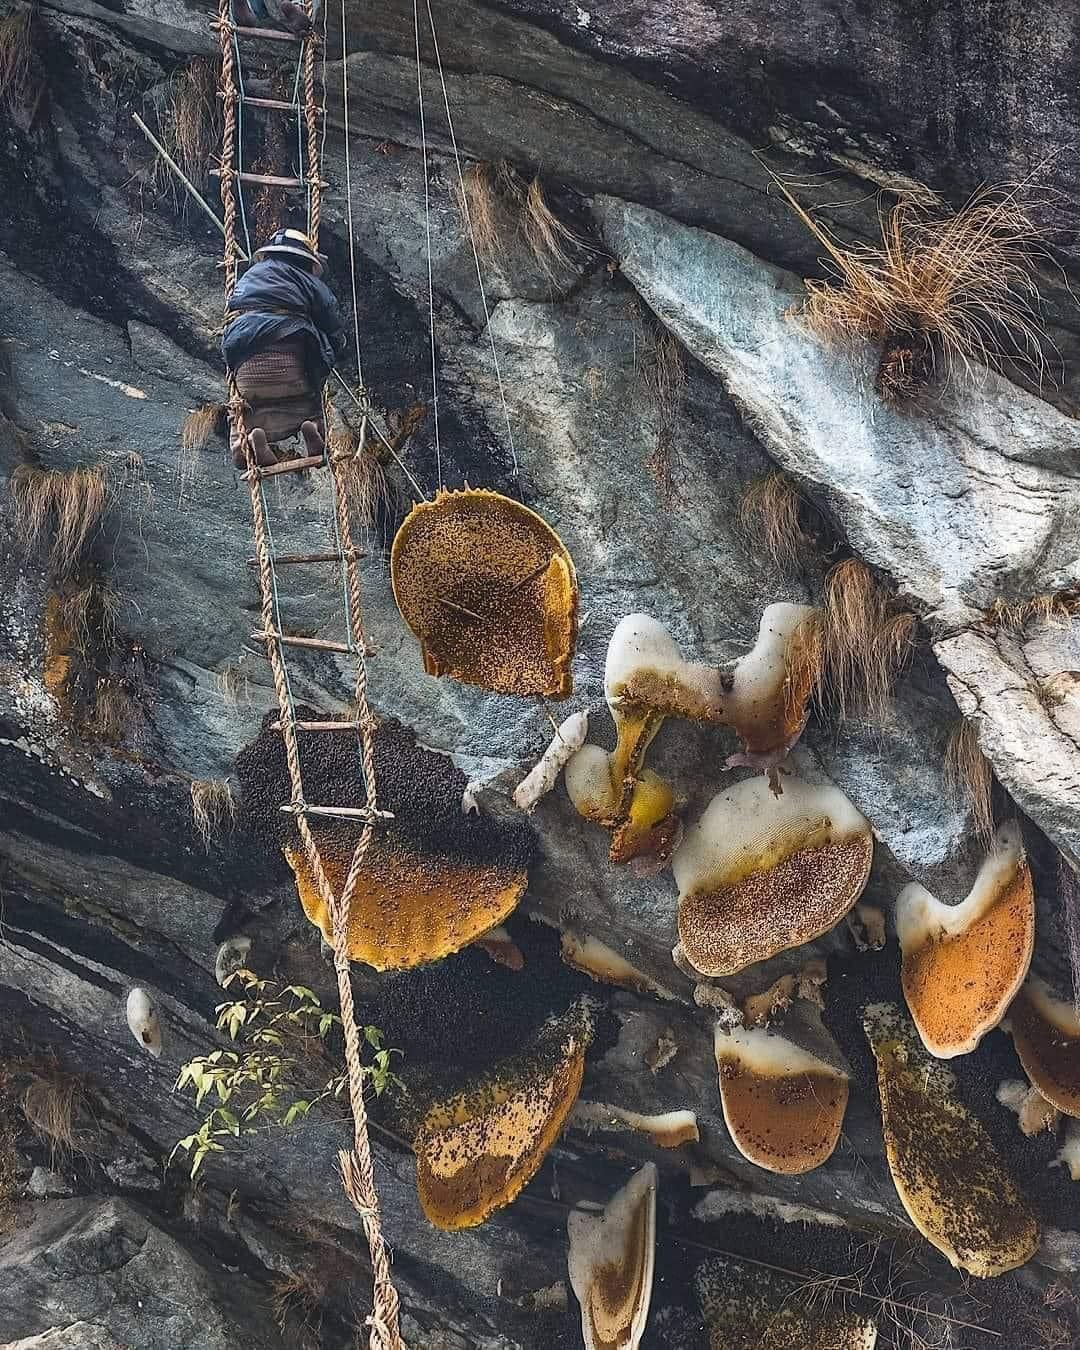 Събиране на див мед в Непал - местните продължават вековната традиция